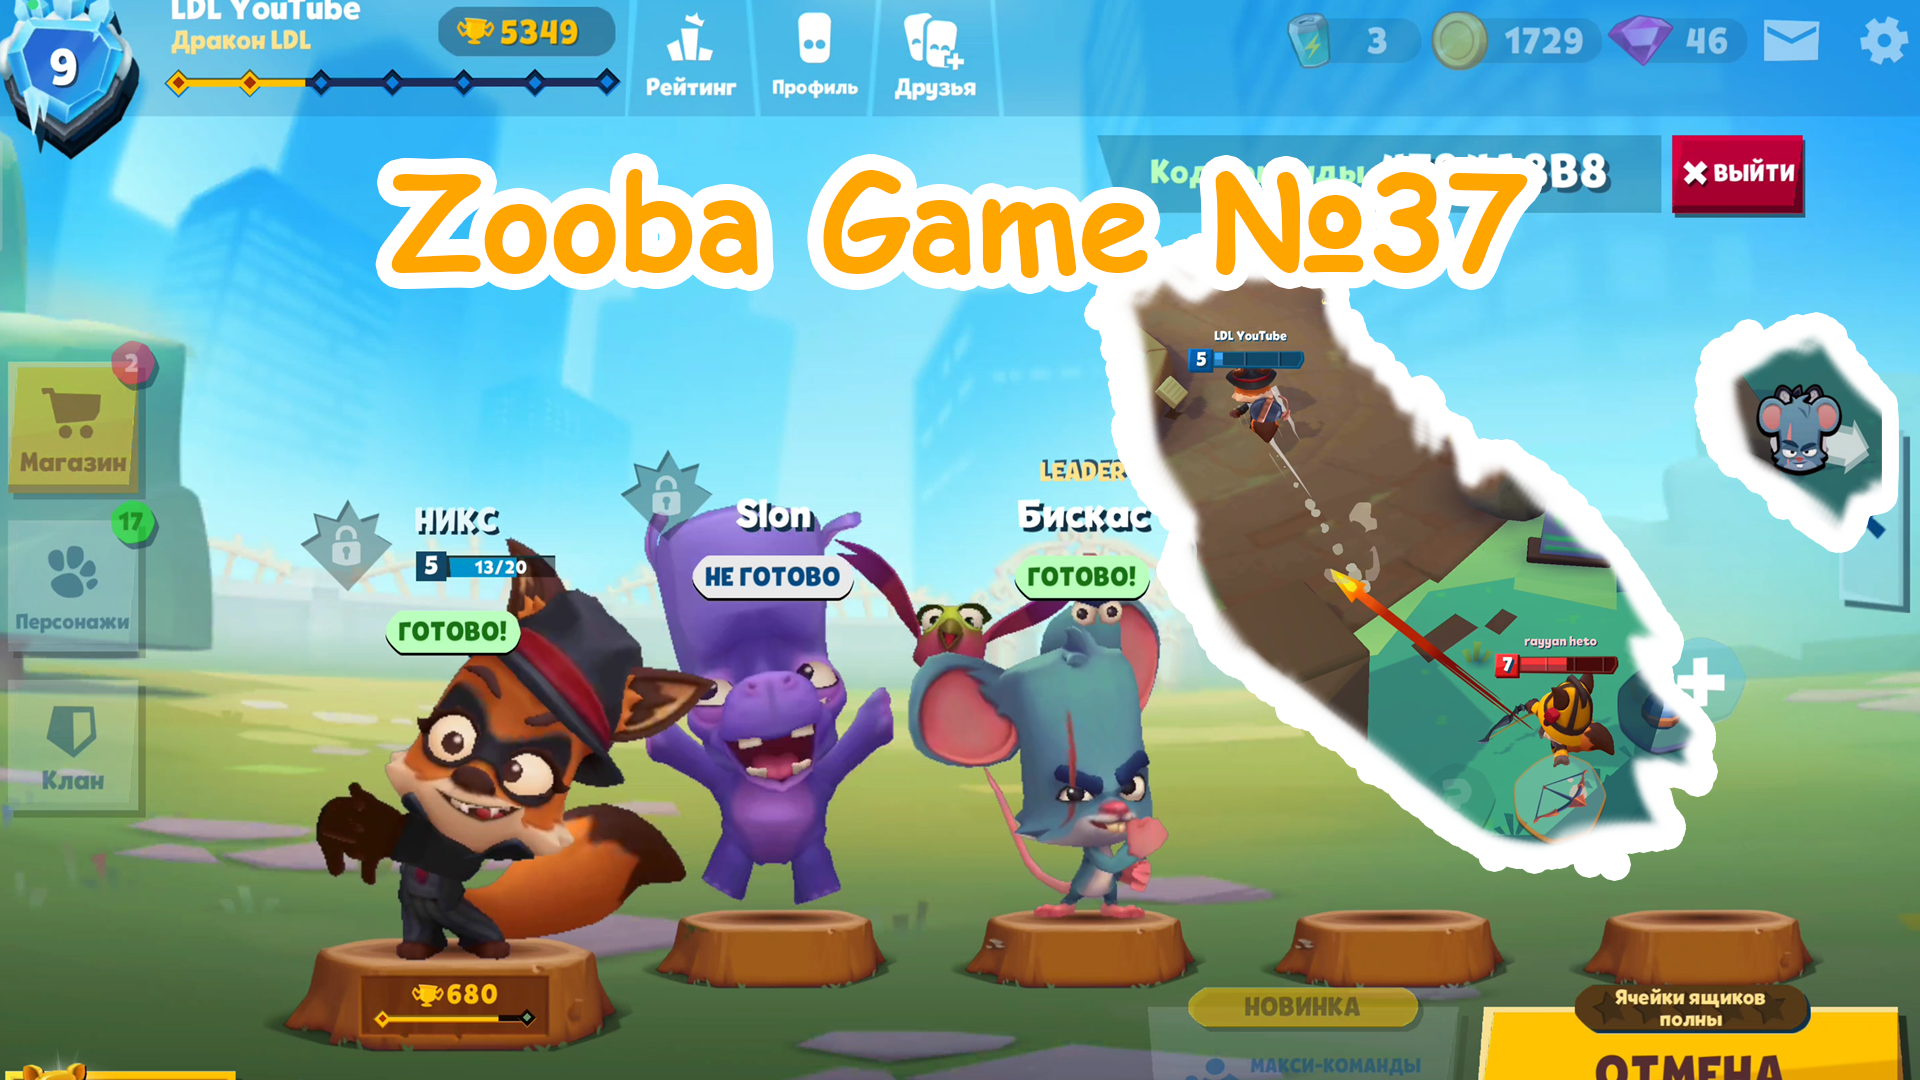 Zooba Game #37 #zooba